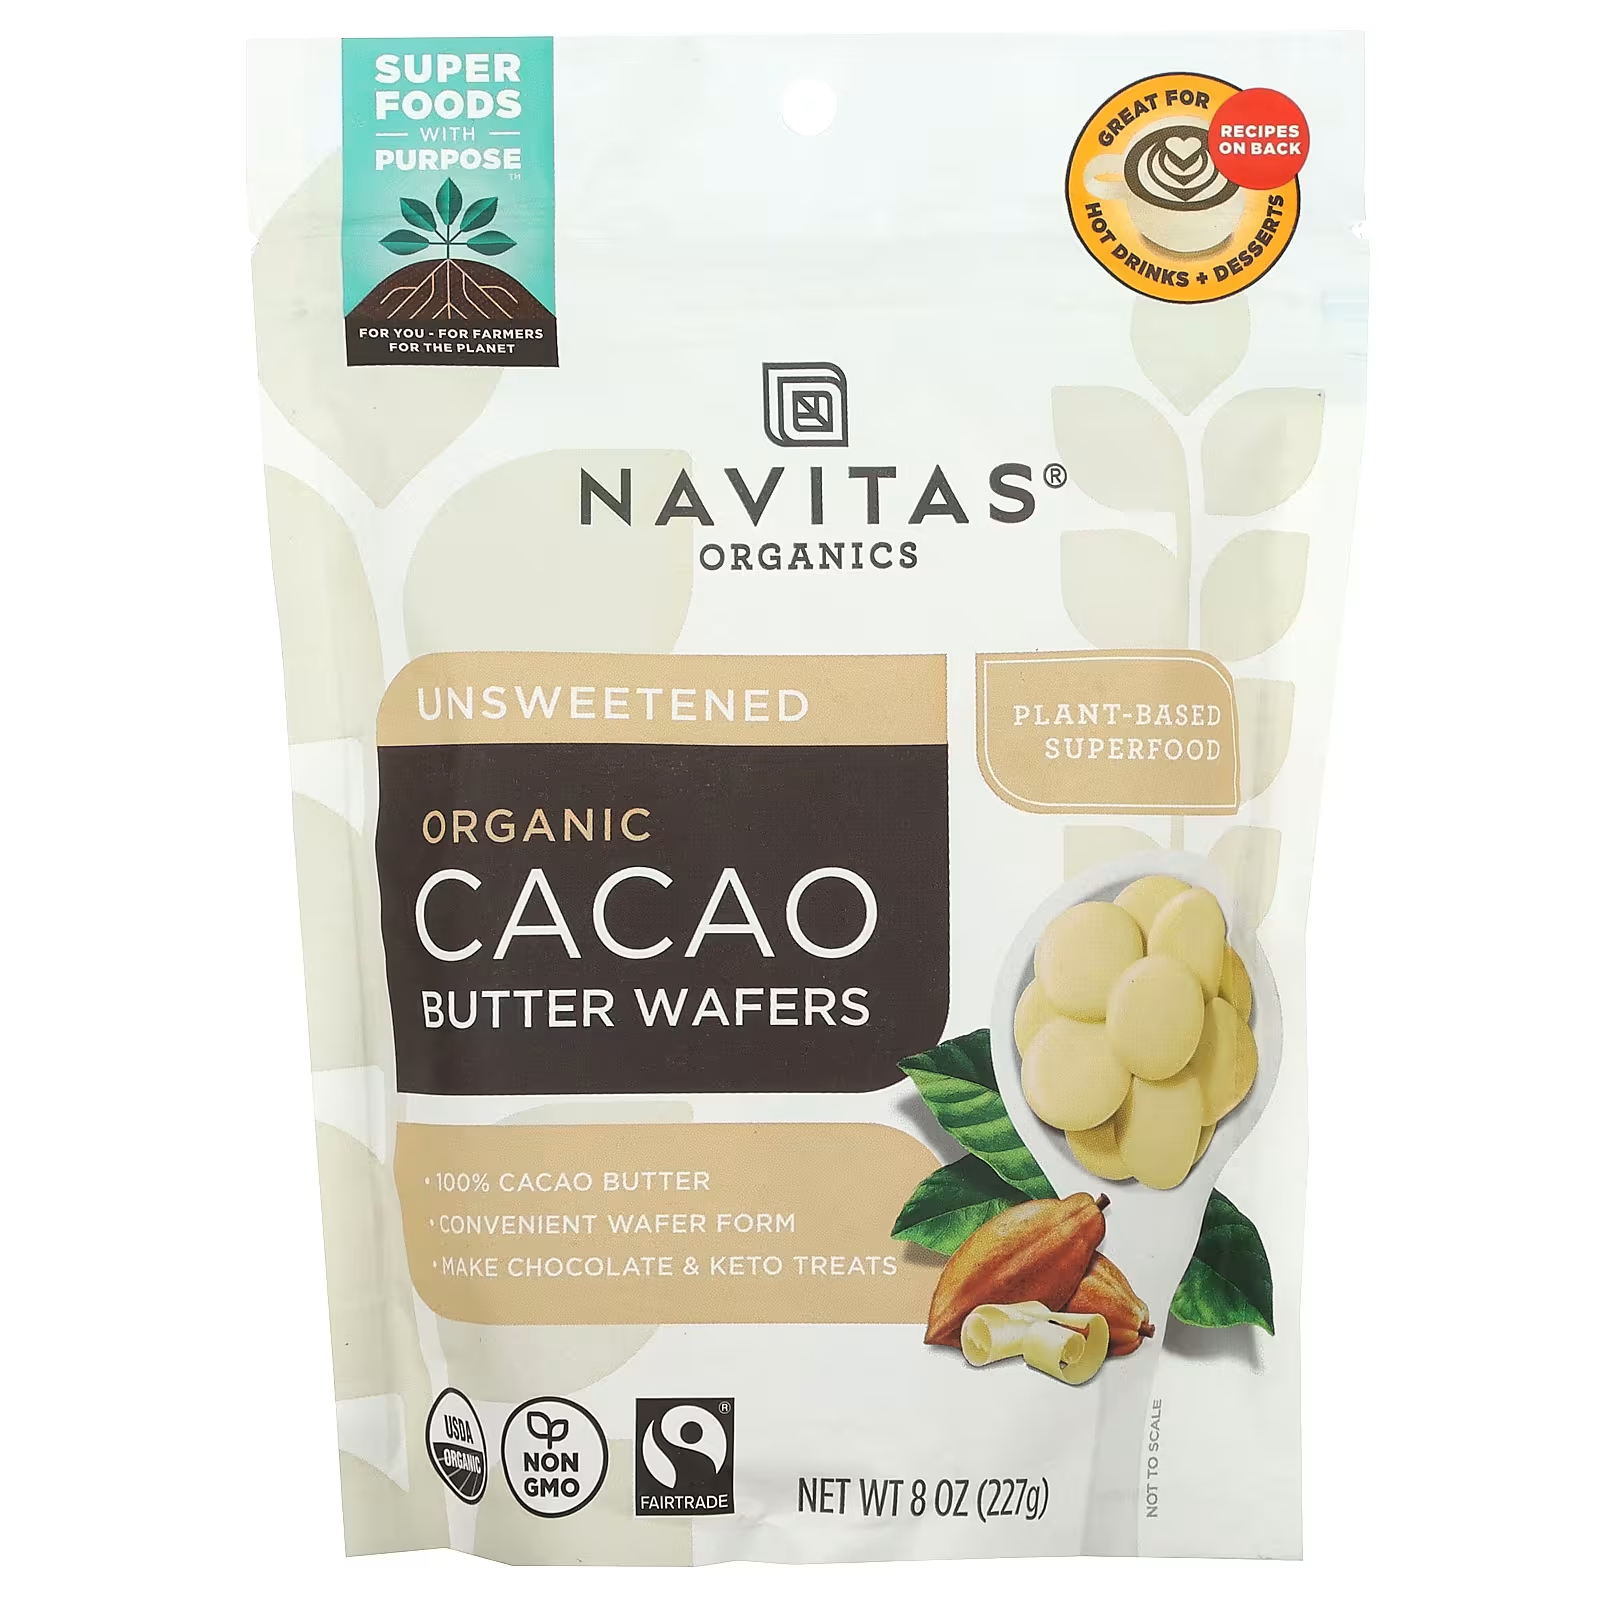 Navitas Organics Органические вафли с маслом какао, несладкие, 8 унций (227 г) navitas organics вафли с органическим маслом какао несладкие 227 г 8 унций